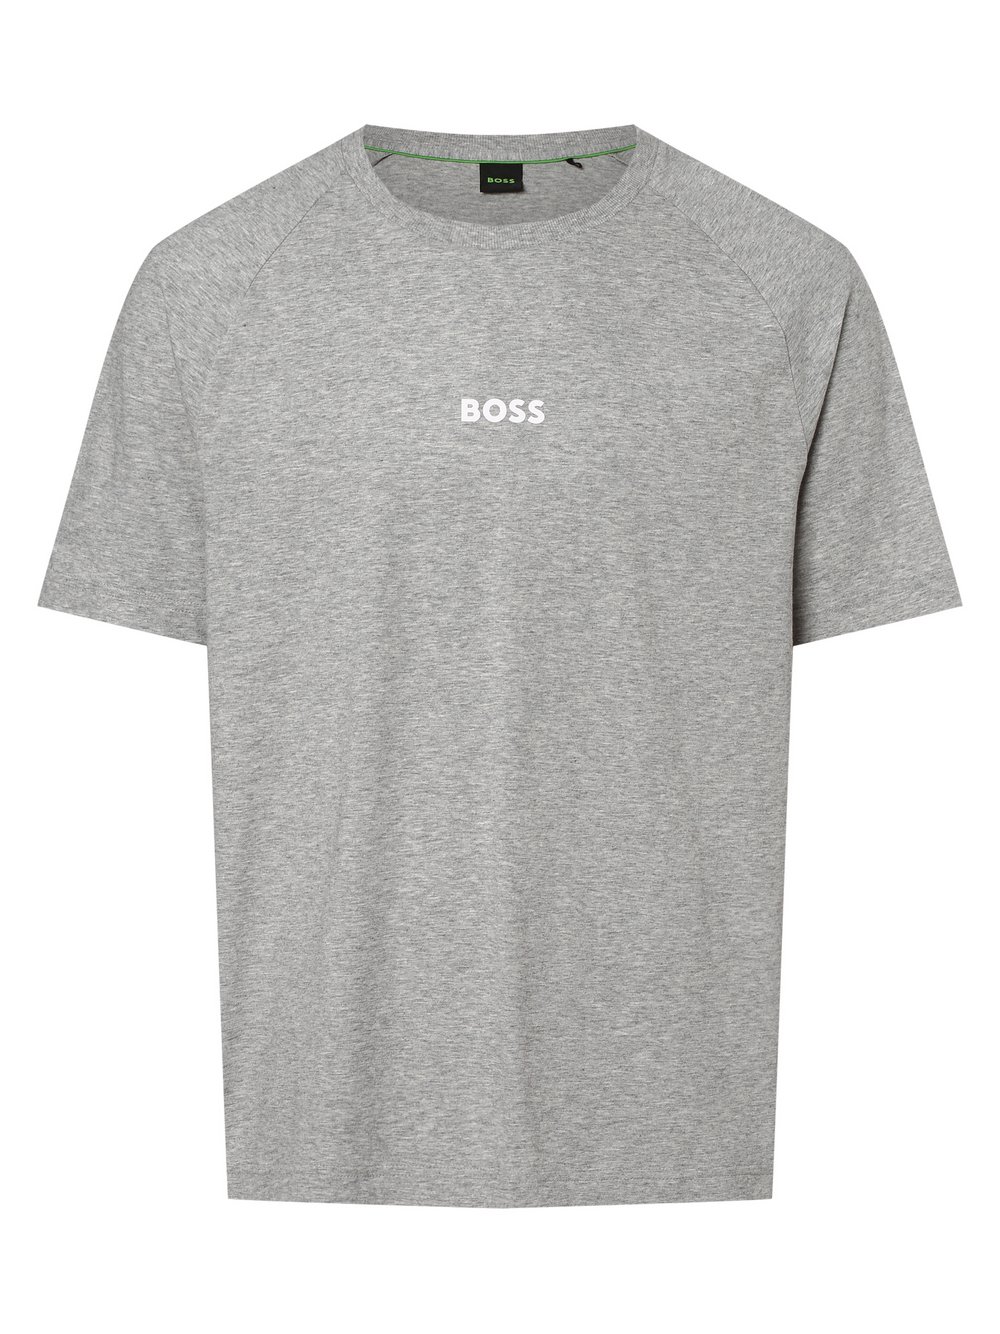 BOSS Green - T-shirt męski – Tee 2, szary